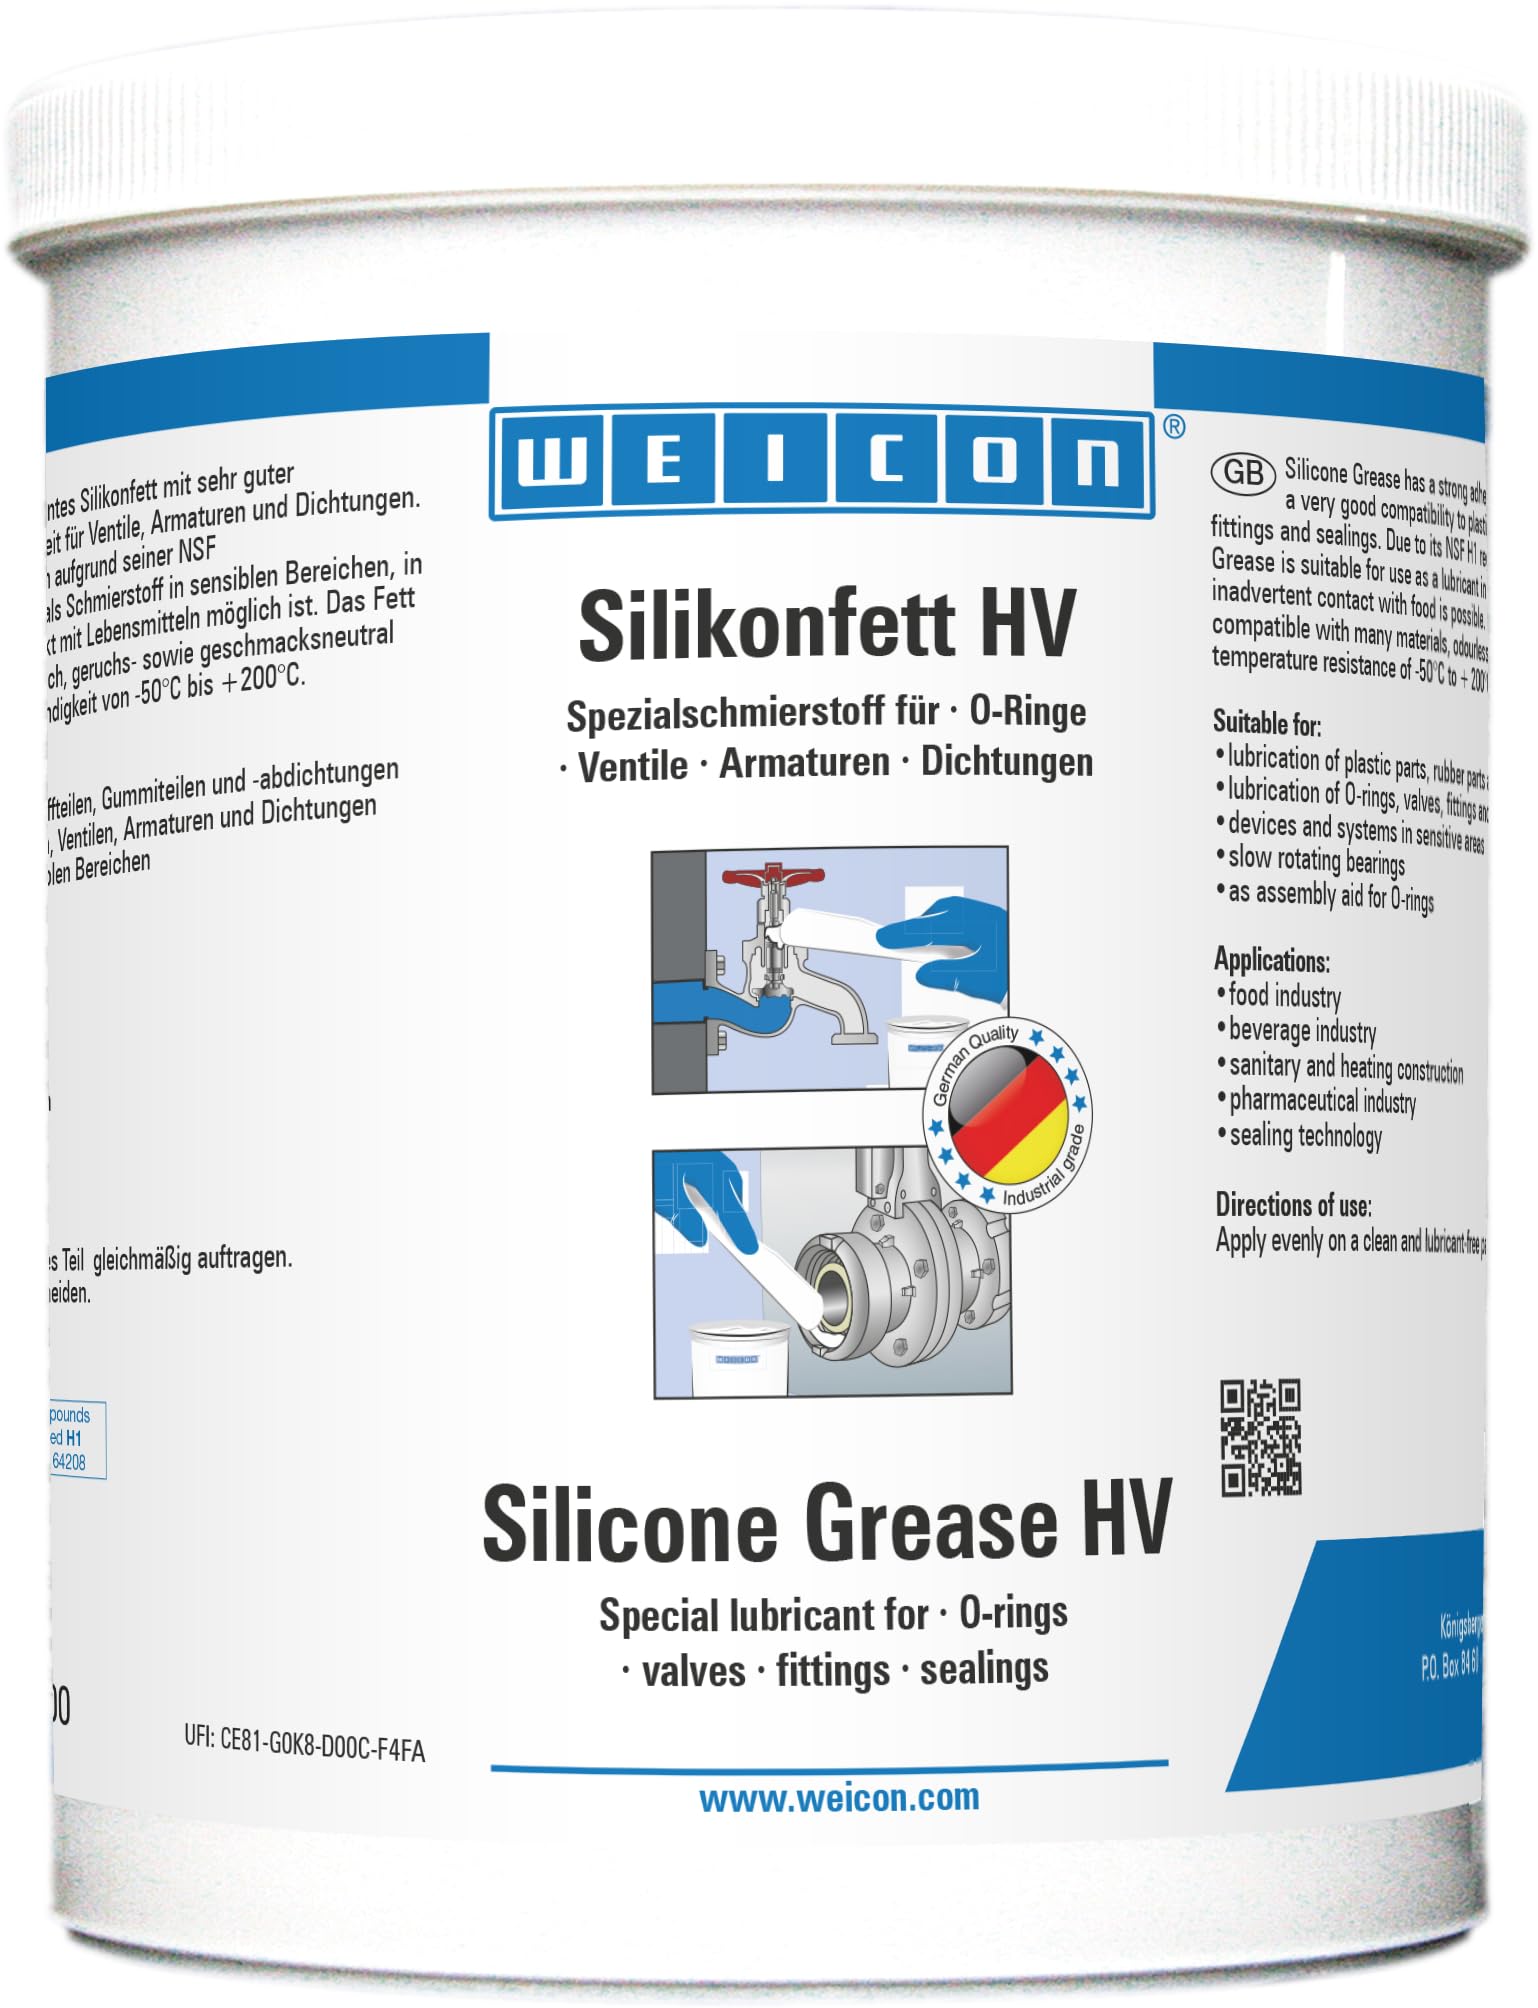 WEICON Silikonfett HV 1 kg, Silikonfett lebensmittelecht für Ventile, Armaturen & Dichtungen, Schmierfett transparent von WEICON